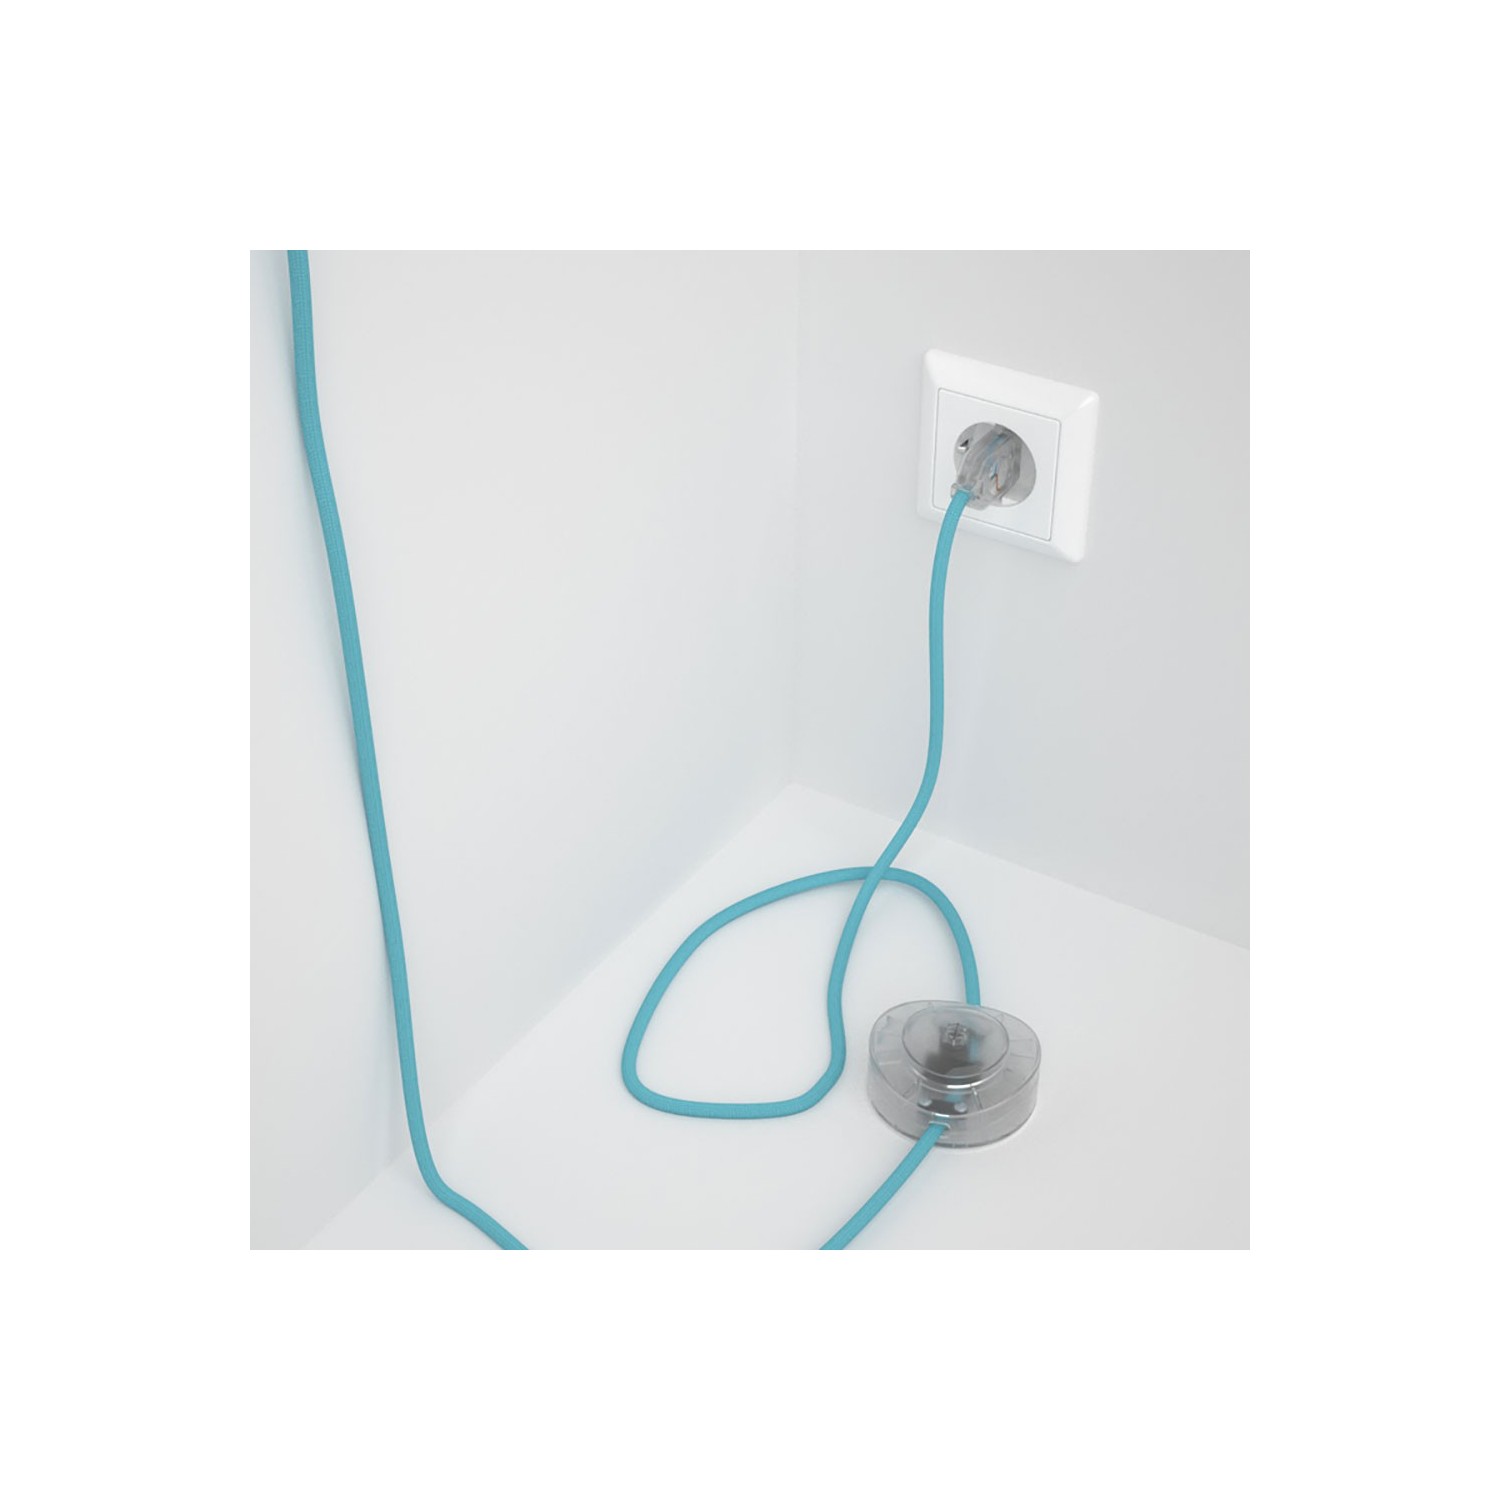 Sladdställ med fotströmbrytare, RM17 Ljusblå Viskos 3 m. Välj färg på strömbrytare och kontakt